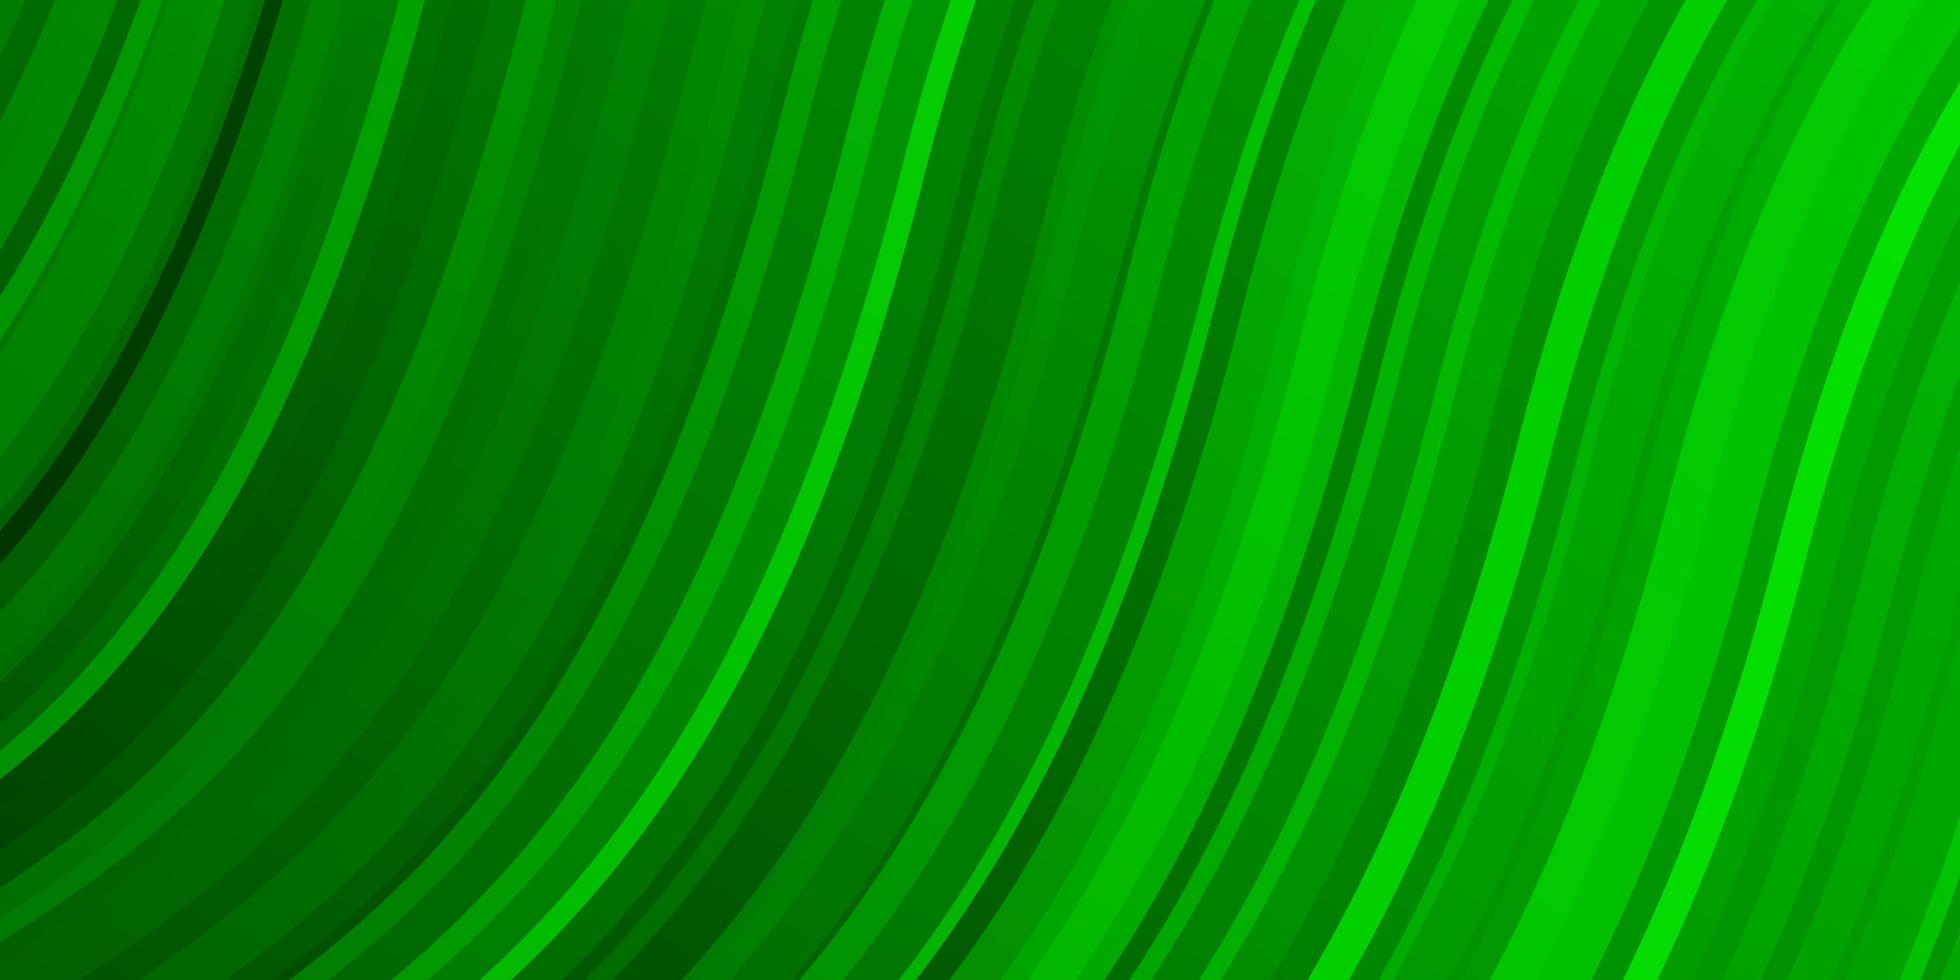 modello vettoriale verde chiaro con linee curve.